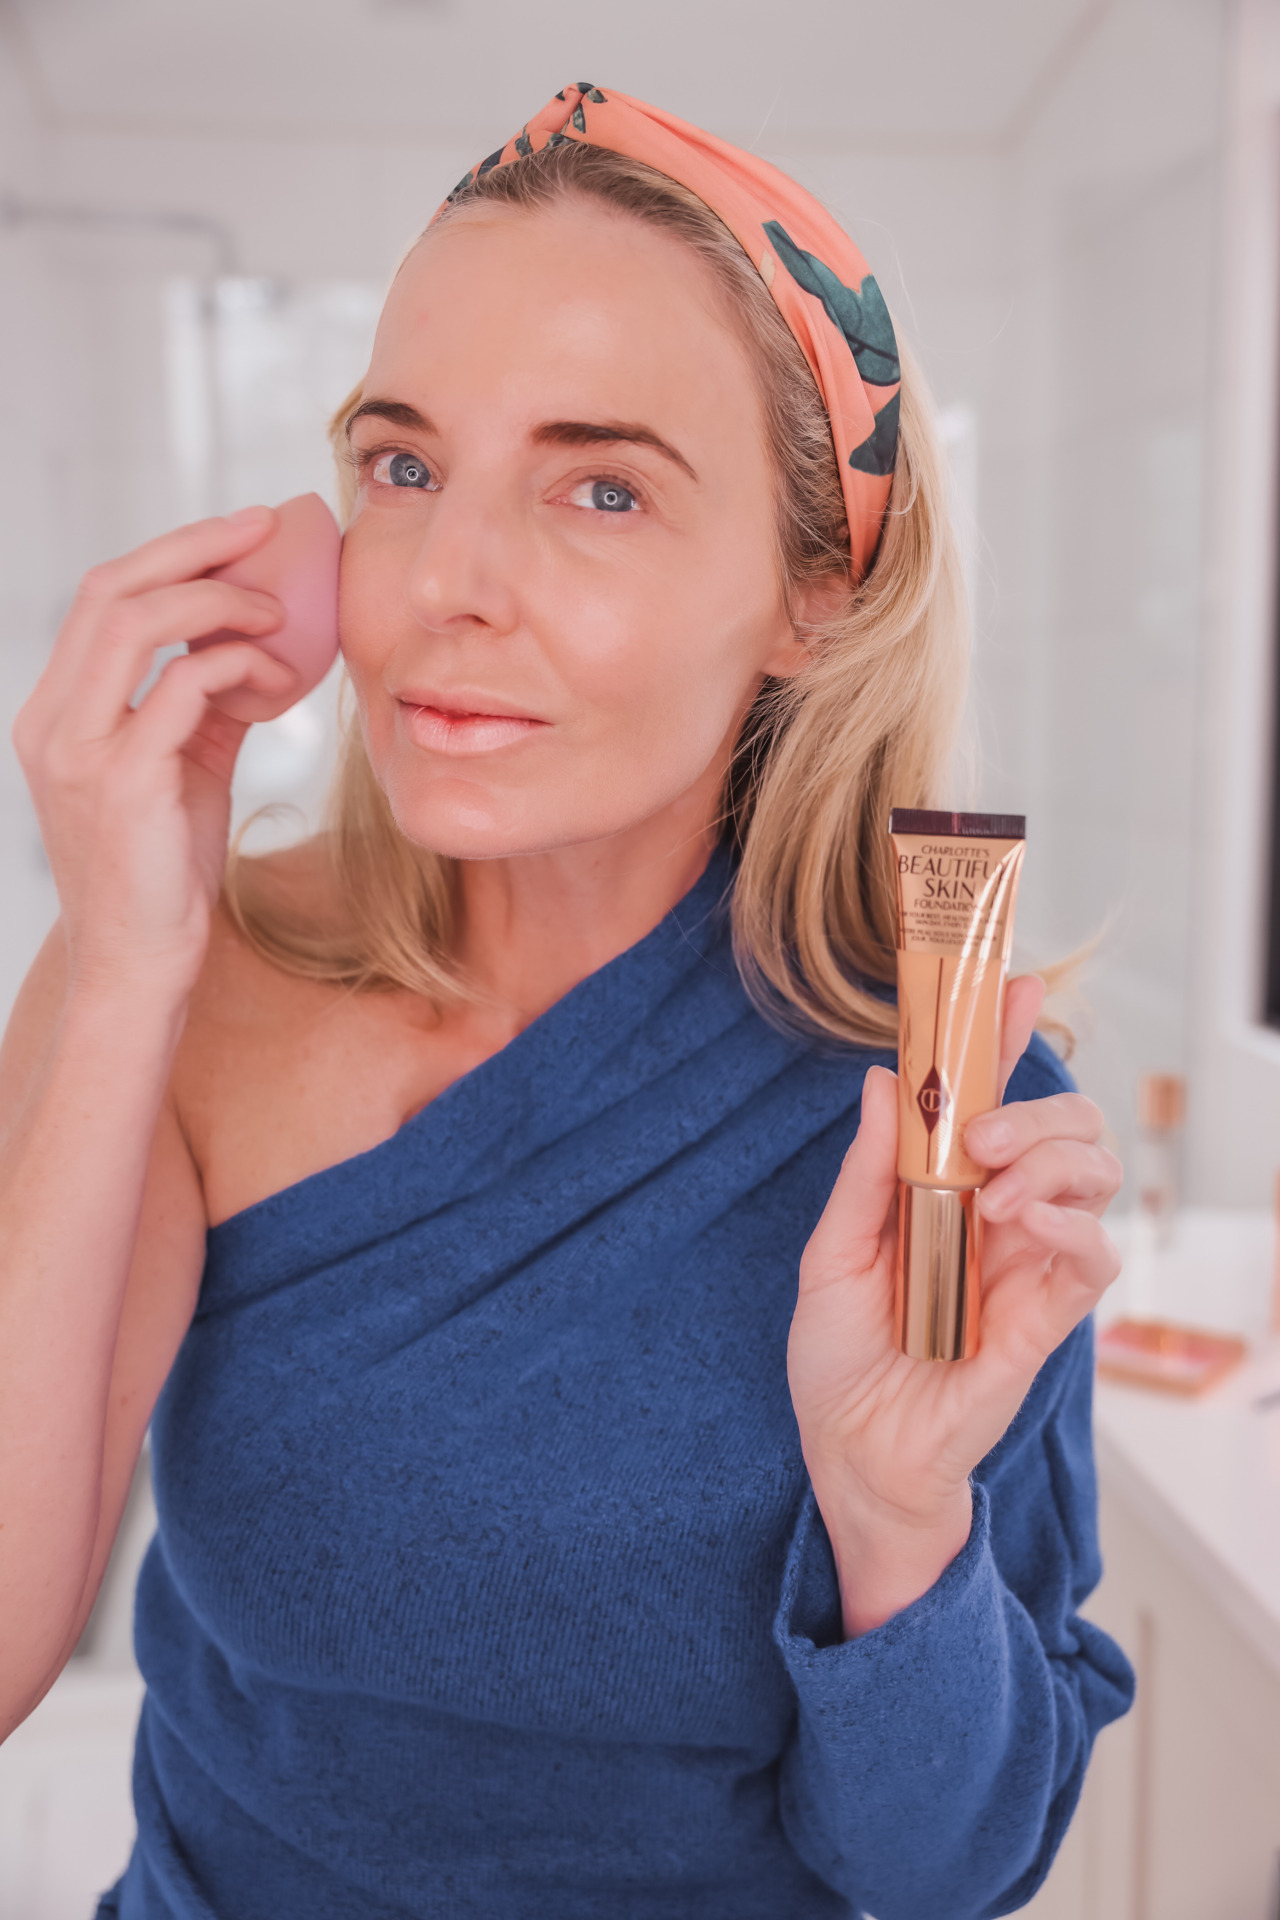 Charlotte Tilbury Makeup Secrets for Mature Skin